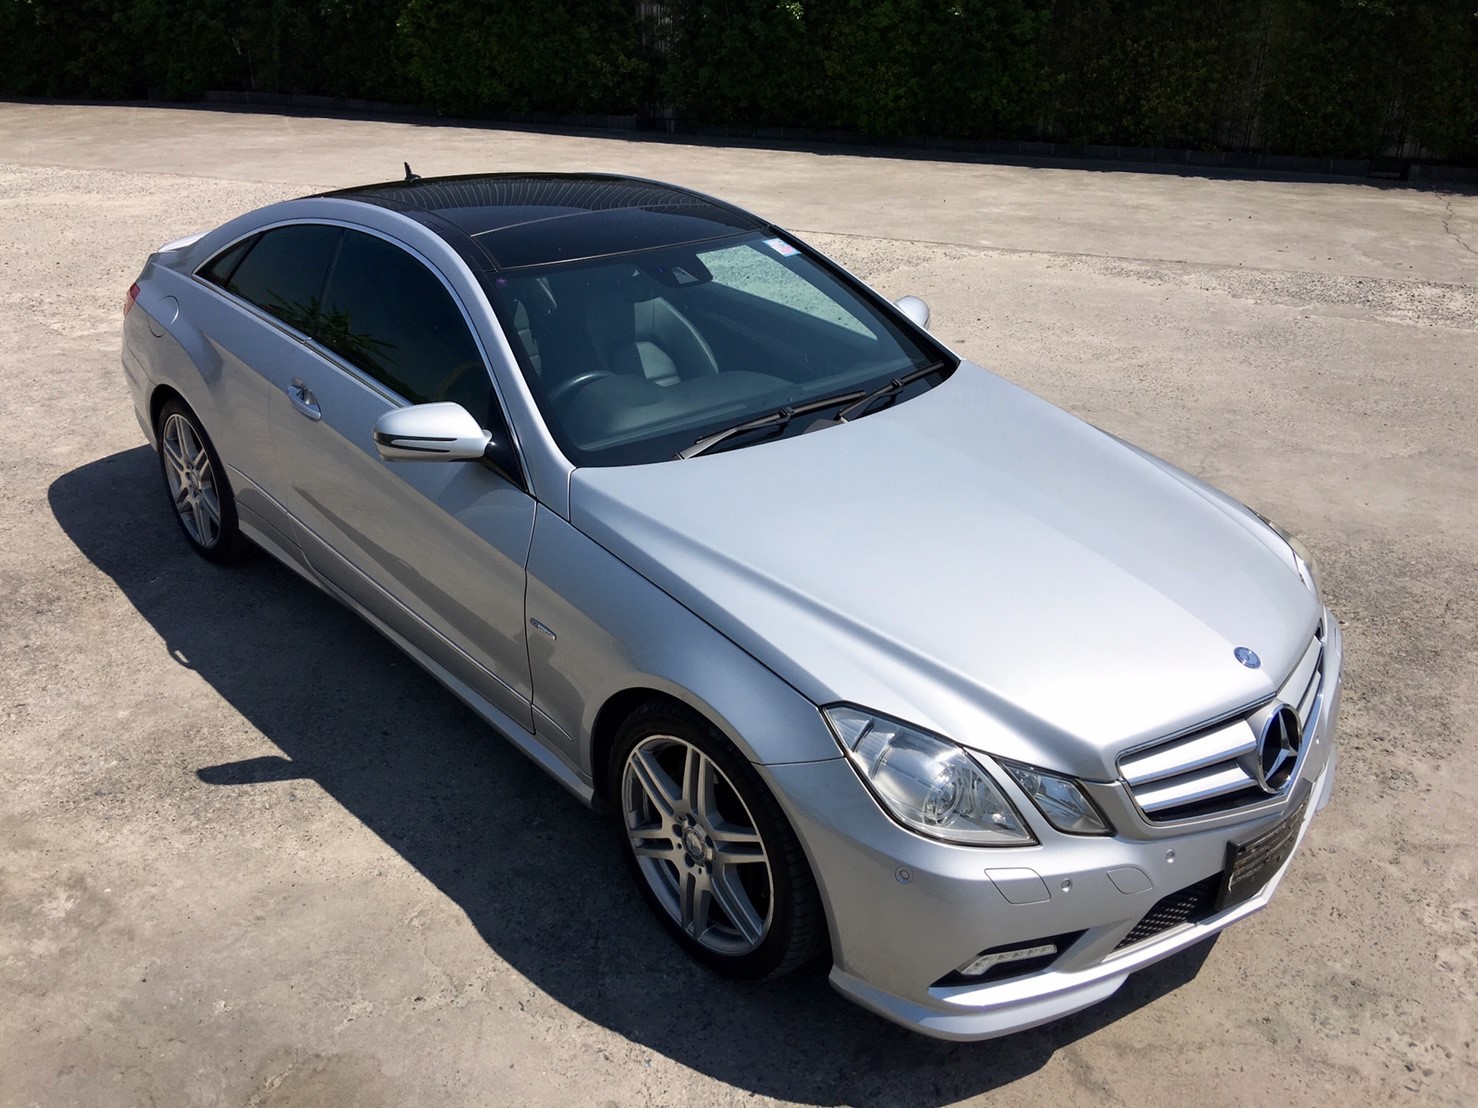 รหัสBT292 ปี2014 Benz E250 cgi Coupe AMG รถศูนย์Daimler Thailand  Full option จากโรงงานทออกห้าง 5.79 ลบ.  -AMG Packet -Command7 DVD Bluetooh Telephone -Navigator -Push Start -Panoramic glass roof -เบาะเมมโมรี่3ตำแหน่งเต็มตัว  ราคาพิเศษเพียง 1,859,000 บาท สนใจติดต่อและทดลองขับ 081-9859973 พล ld line : kam01092512 รูปที่ 1